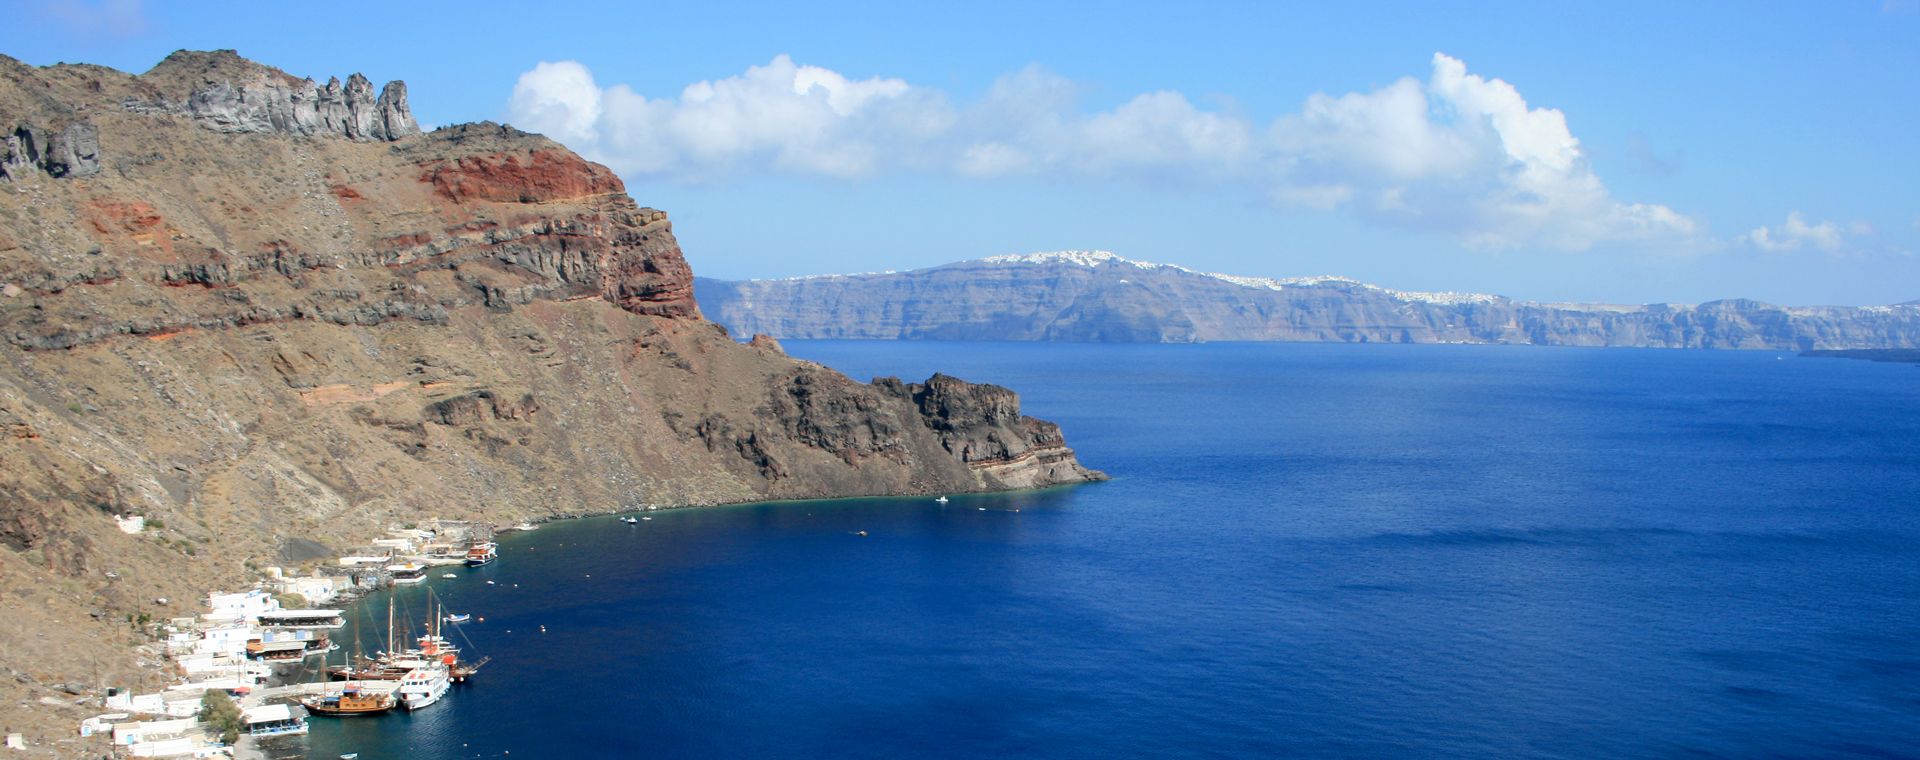 Thirasia Island next to Santorini